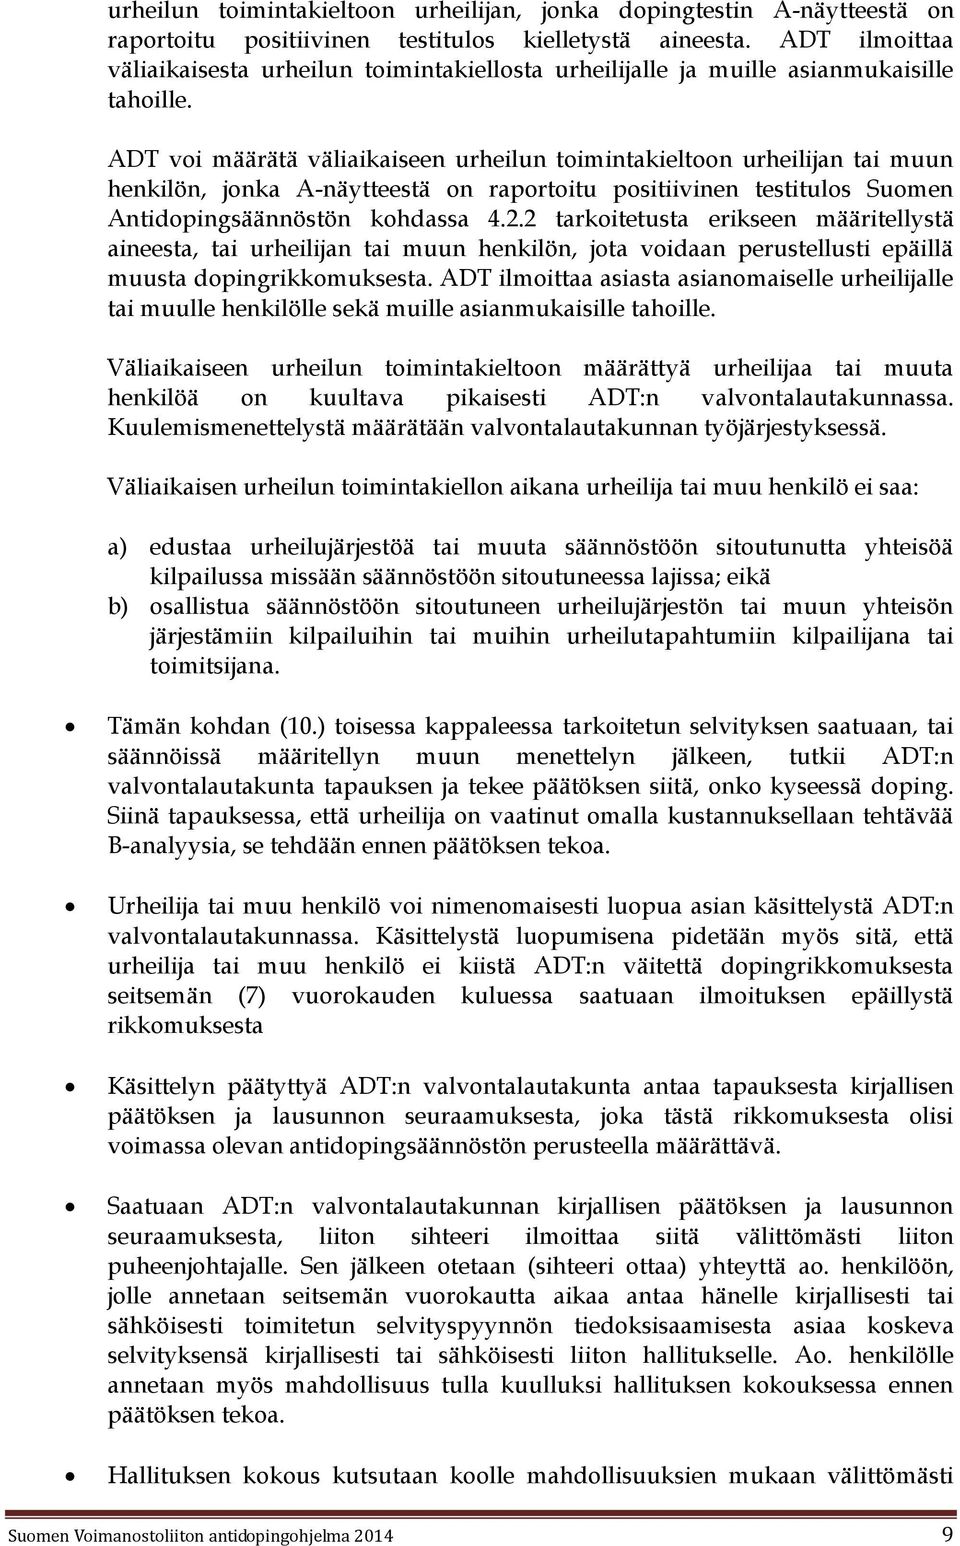 ADT voi määrätä väliaikaiseen urheilun toimintakieltoon urheilijan tai muun henkilön, jonka A-näytteestä on raportoitu positiivinen testitulos Suomen Antidopingsäännöstön kohdassa 4.2.